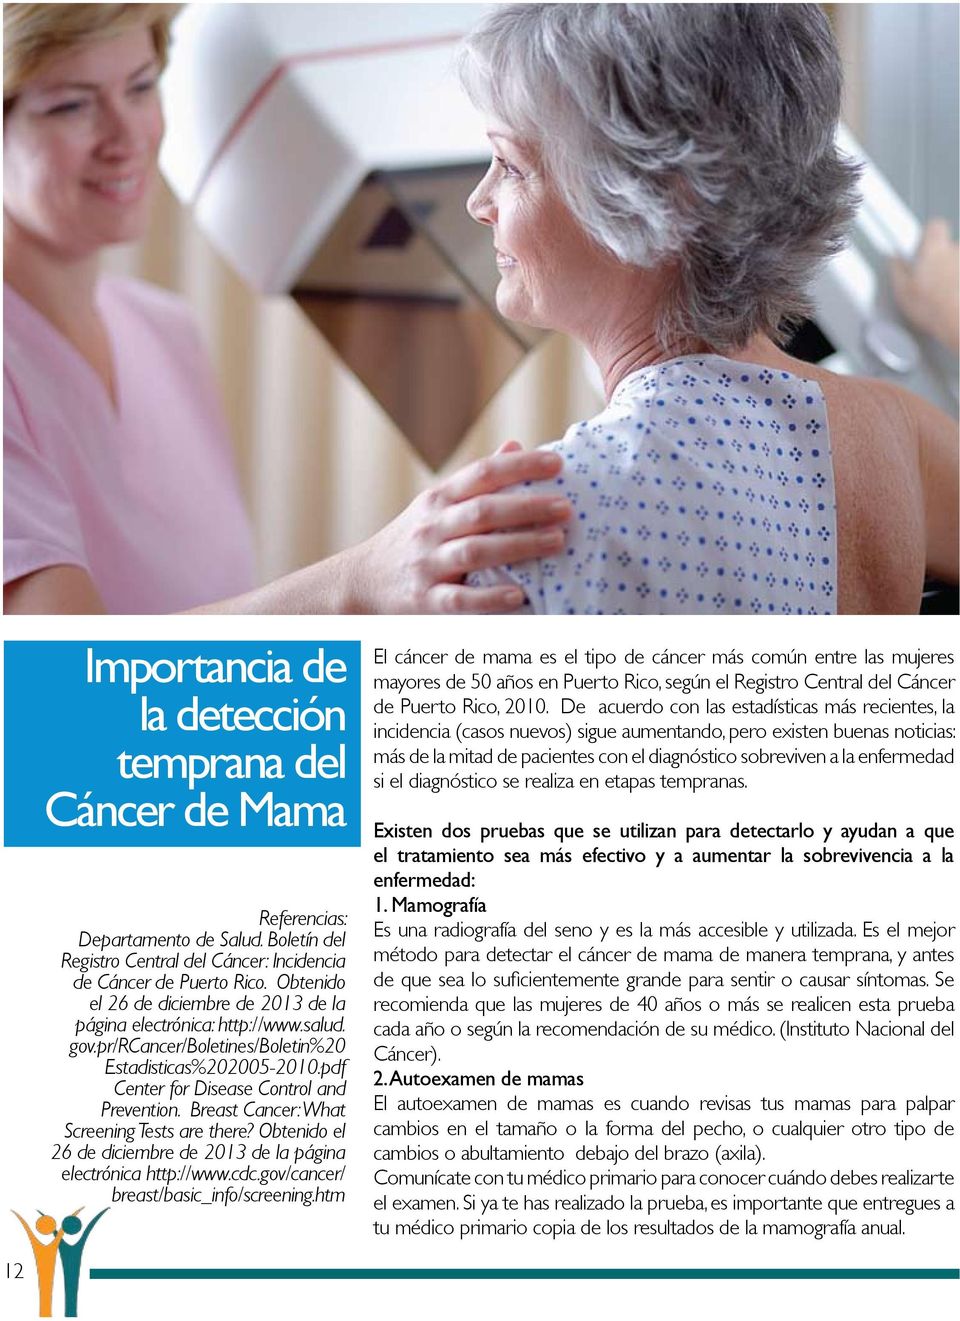 Breast Cancer: What Screening Tests are there? Obtenido el 26 de diciembre de 2013 de la página electrónica http://www.cdc.gov/cancer/ breast/basic_info/screening.